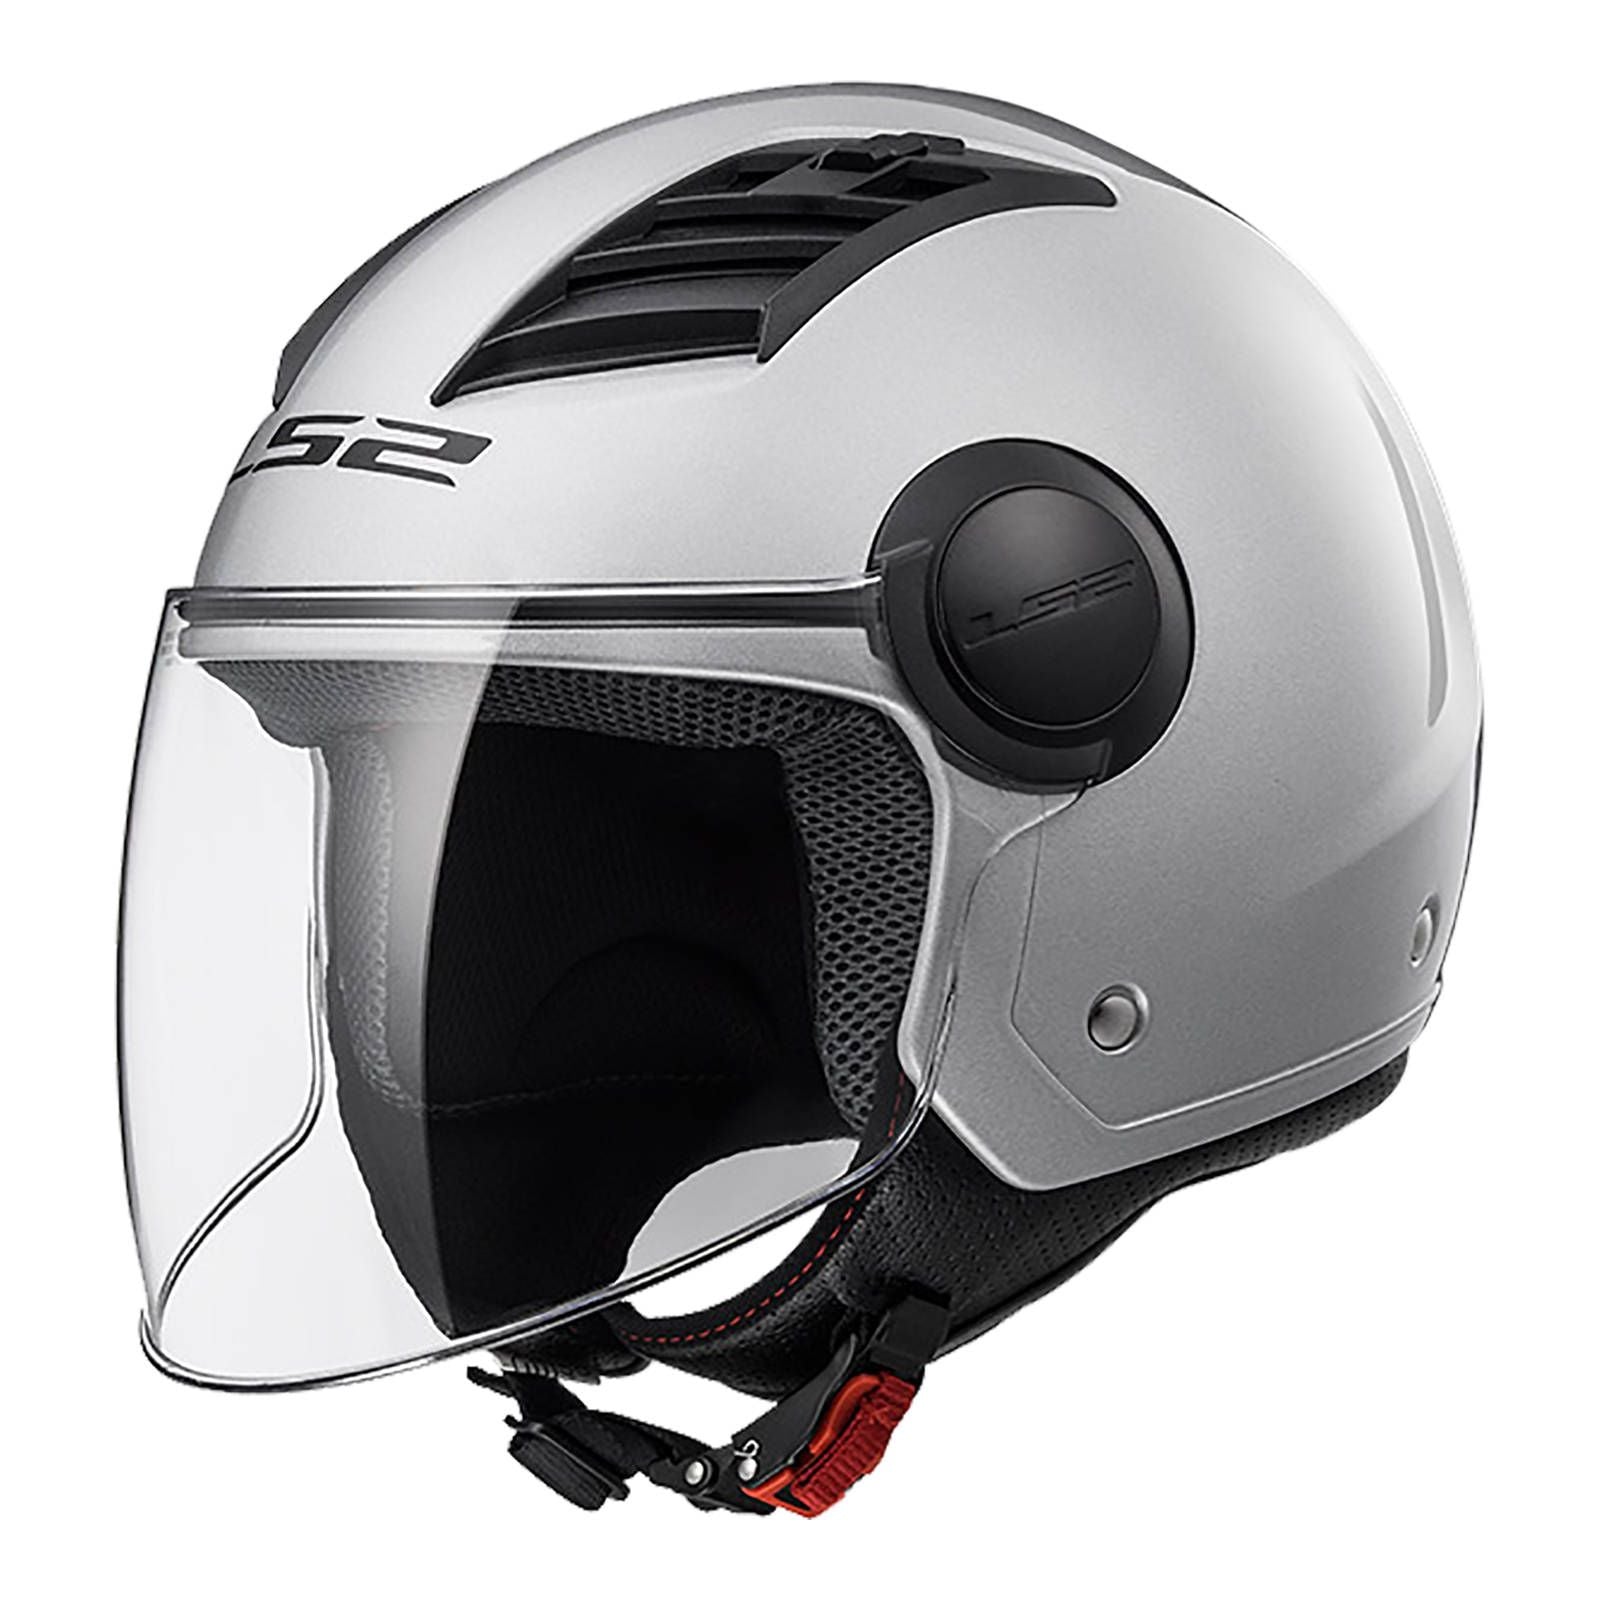 New LS2 OF562 Airflow-L Helmet - Silver (2XL) #LS2OF562SS2XL